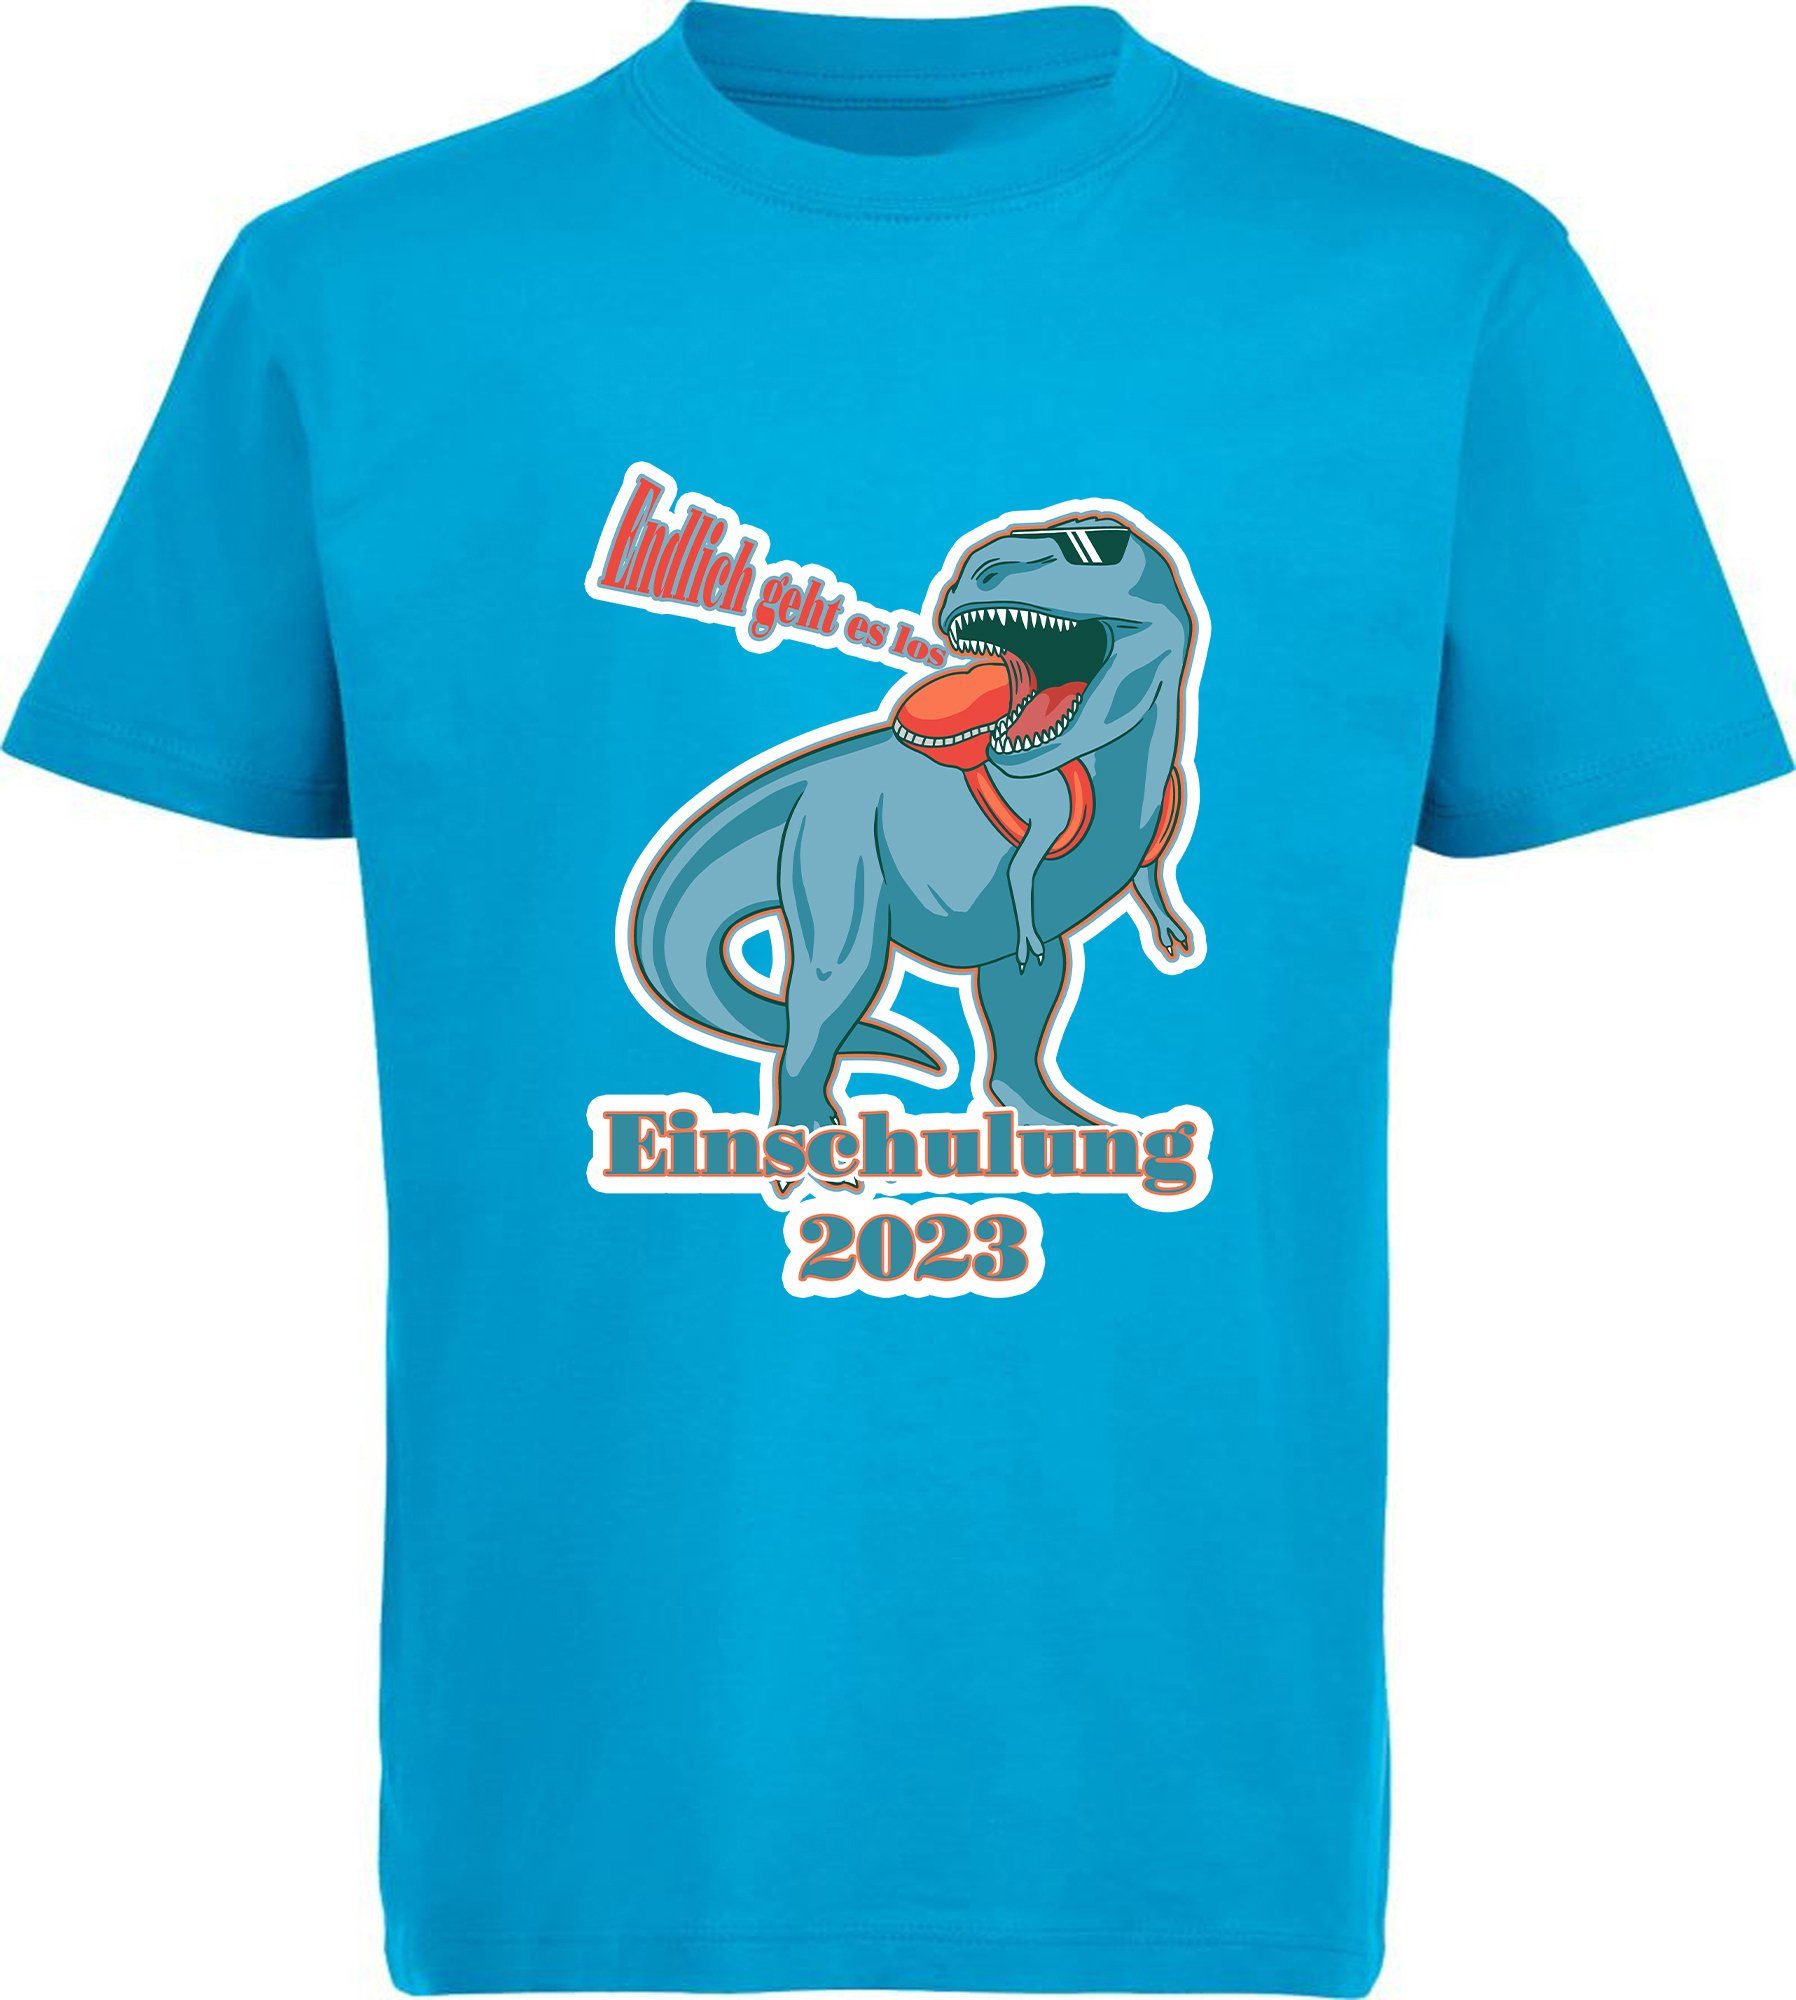 es blau, schwarz, weiß, i37 T-Shirt 2023 aqua Einschulung MyDesign24 rot, Endlich Aufdruck, T-Rex Print-Shirt Kinder Baumwollshirt - geht blau bedrucktes los